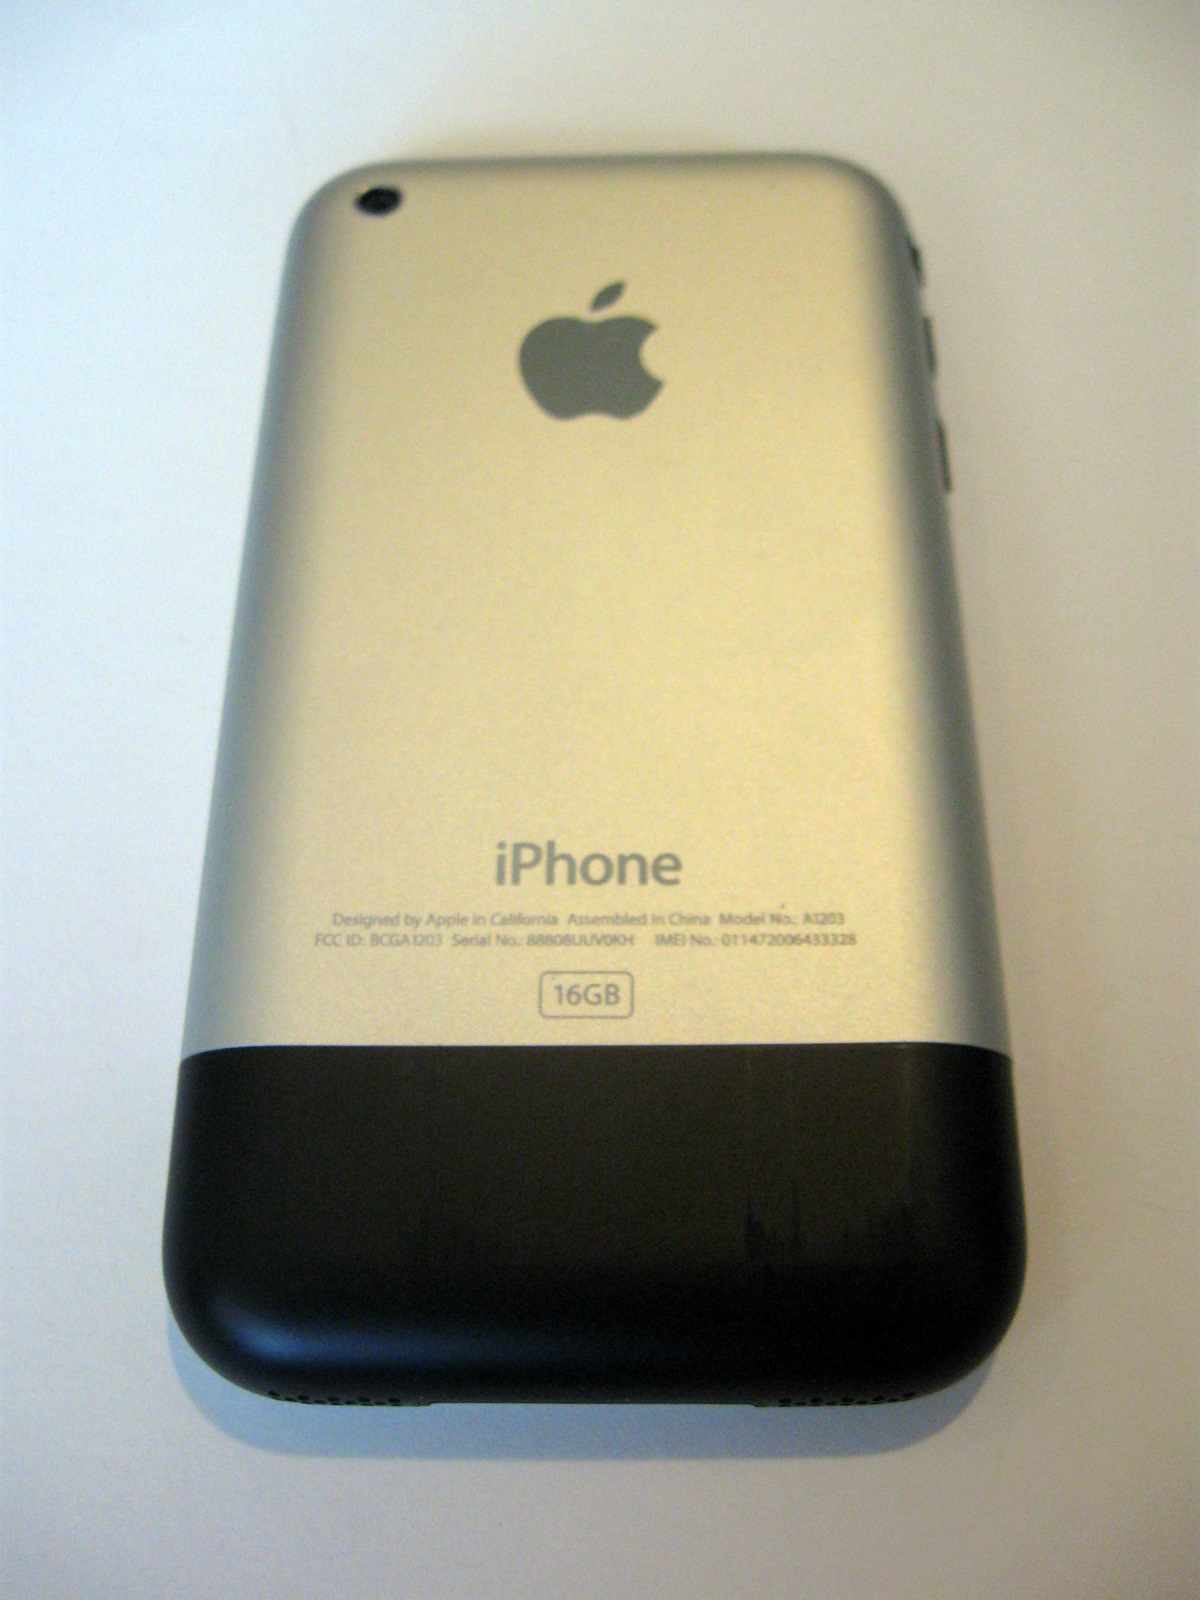 iPhone 2G 16GB   iPhone Catalog